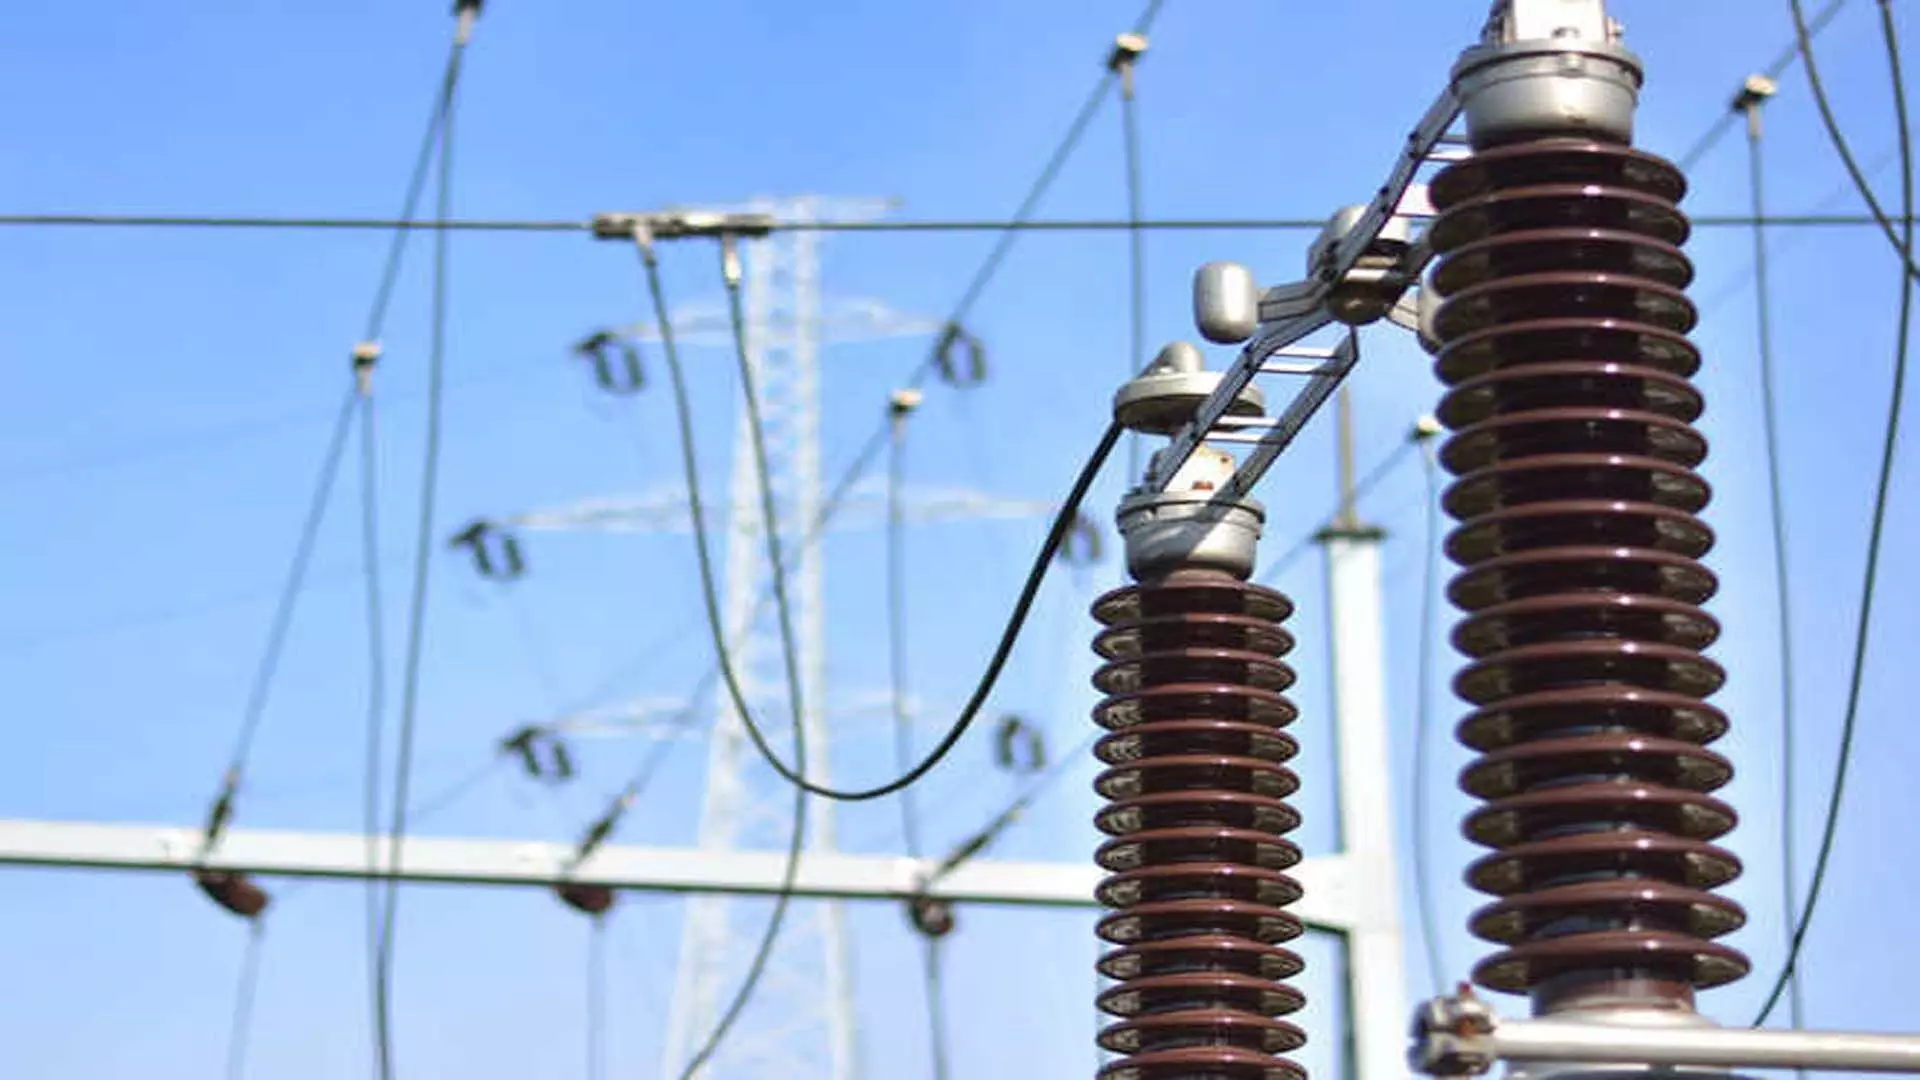 Punjab: बिजली कंपनी PSPCL ने 16,089 मेगावाट की अब तक की सर्वाधिक बिजली मांग को पूरा किया